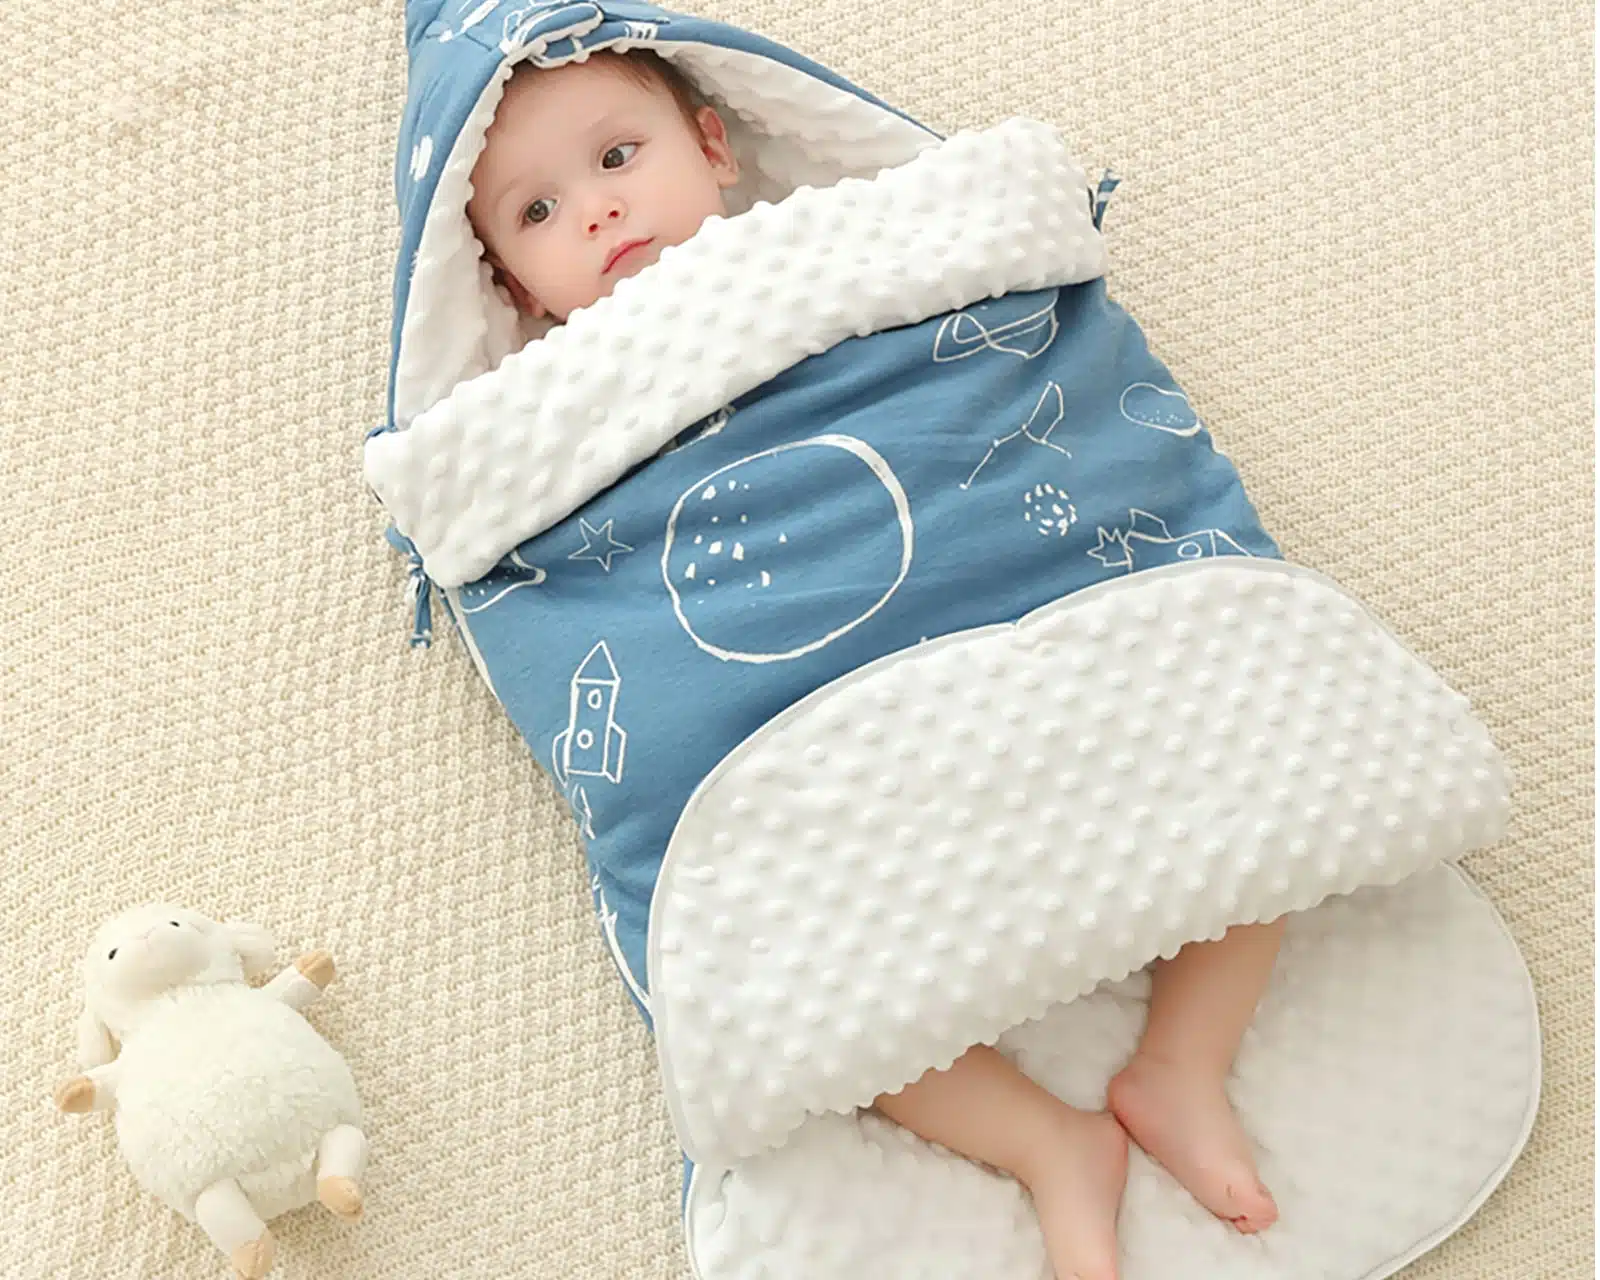 Sac de couchage enfant coloré avec motif mignon et son repose cou intégré. Bonne qualité et très confortable.